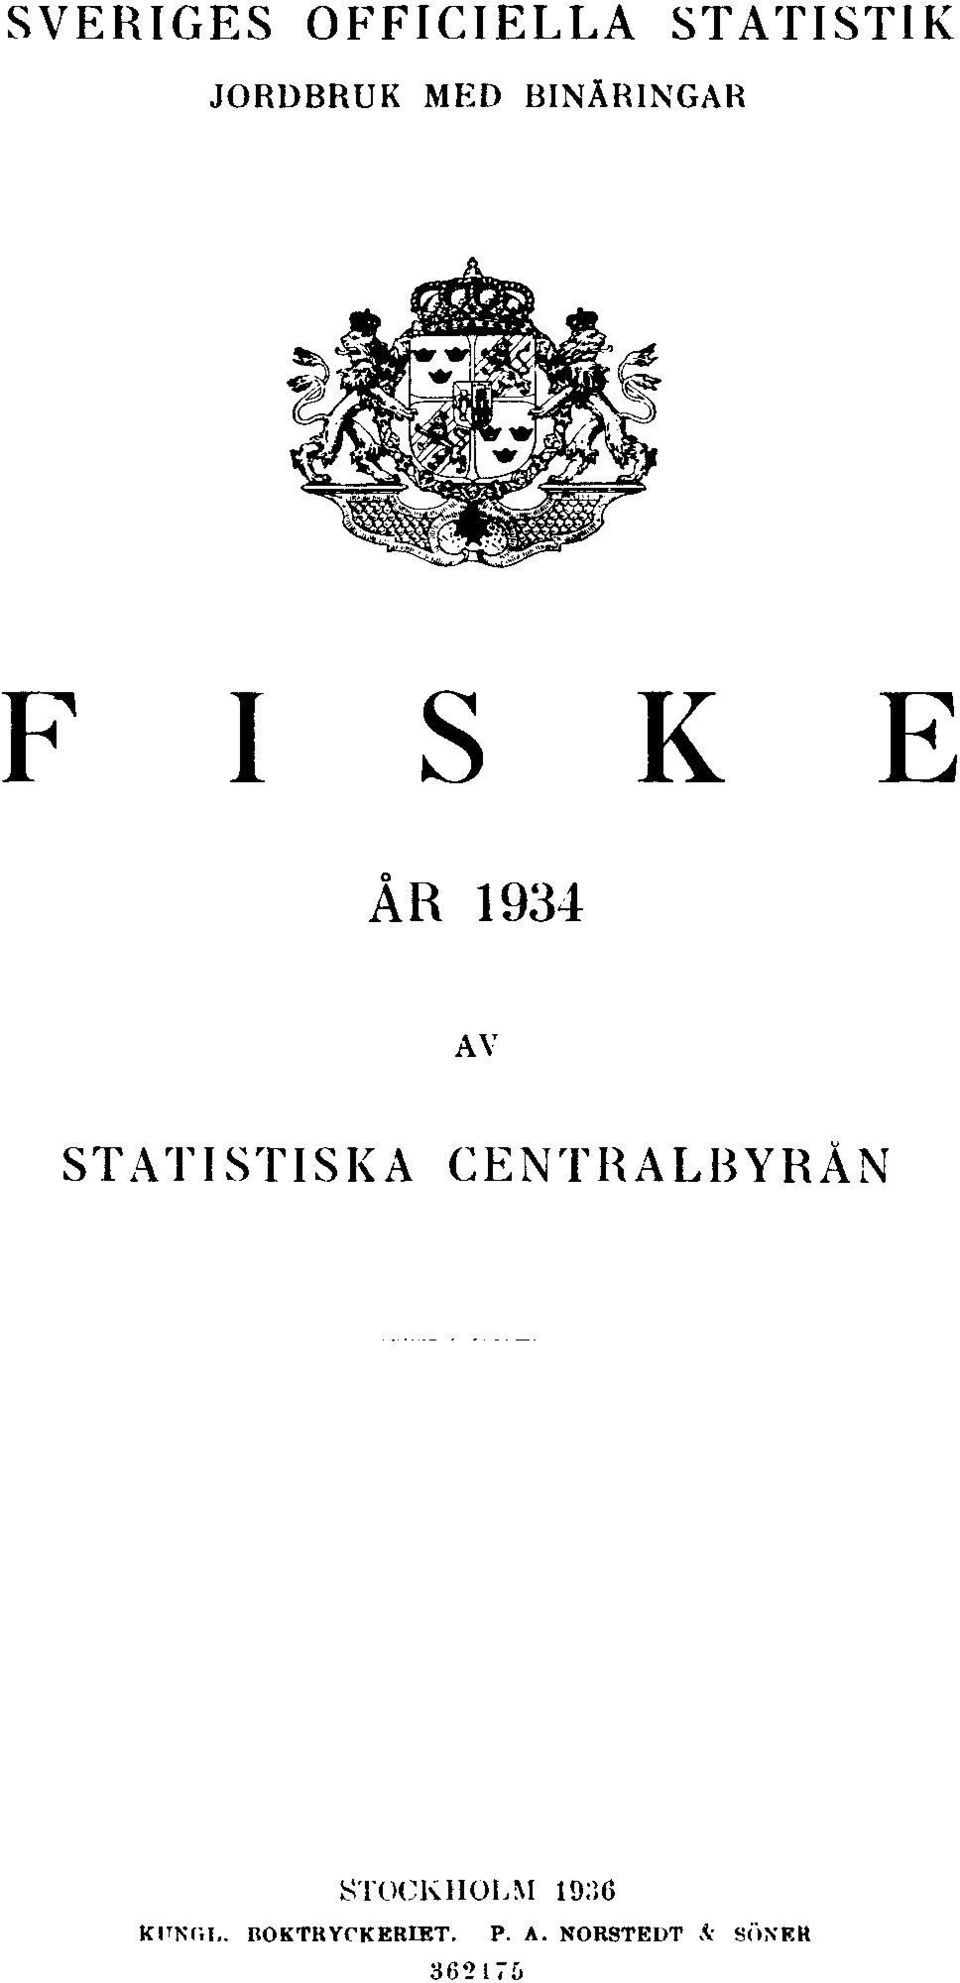 STATISTISKA CENTRALBYRÅN STOCKHOLM 1936